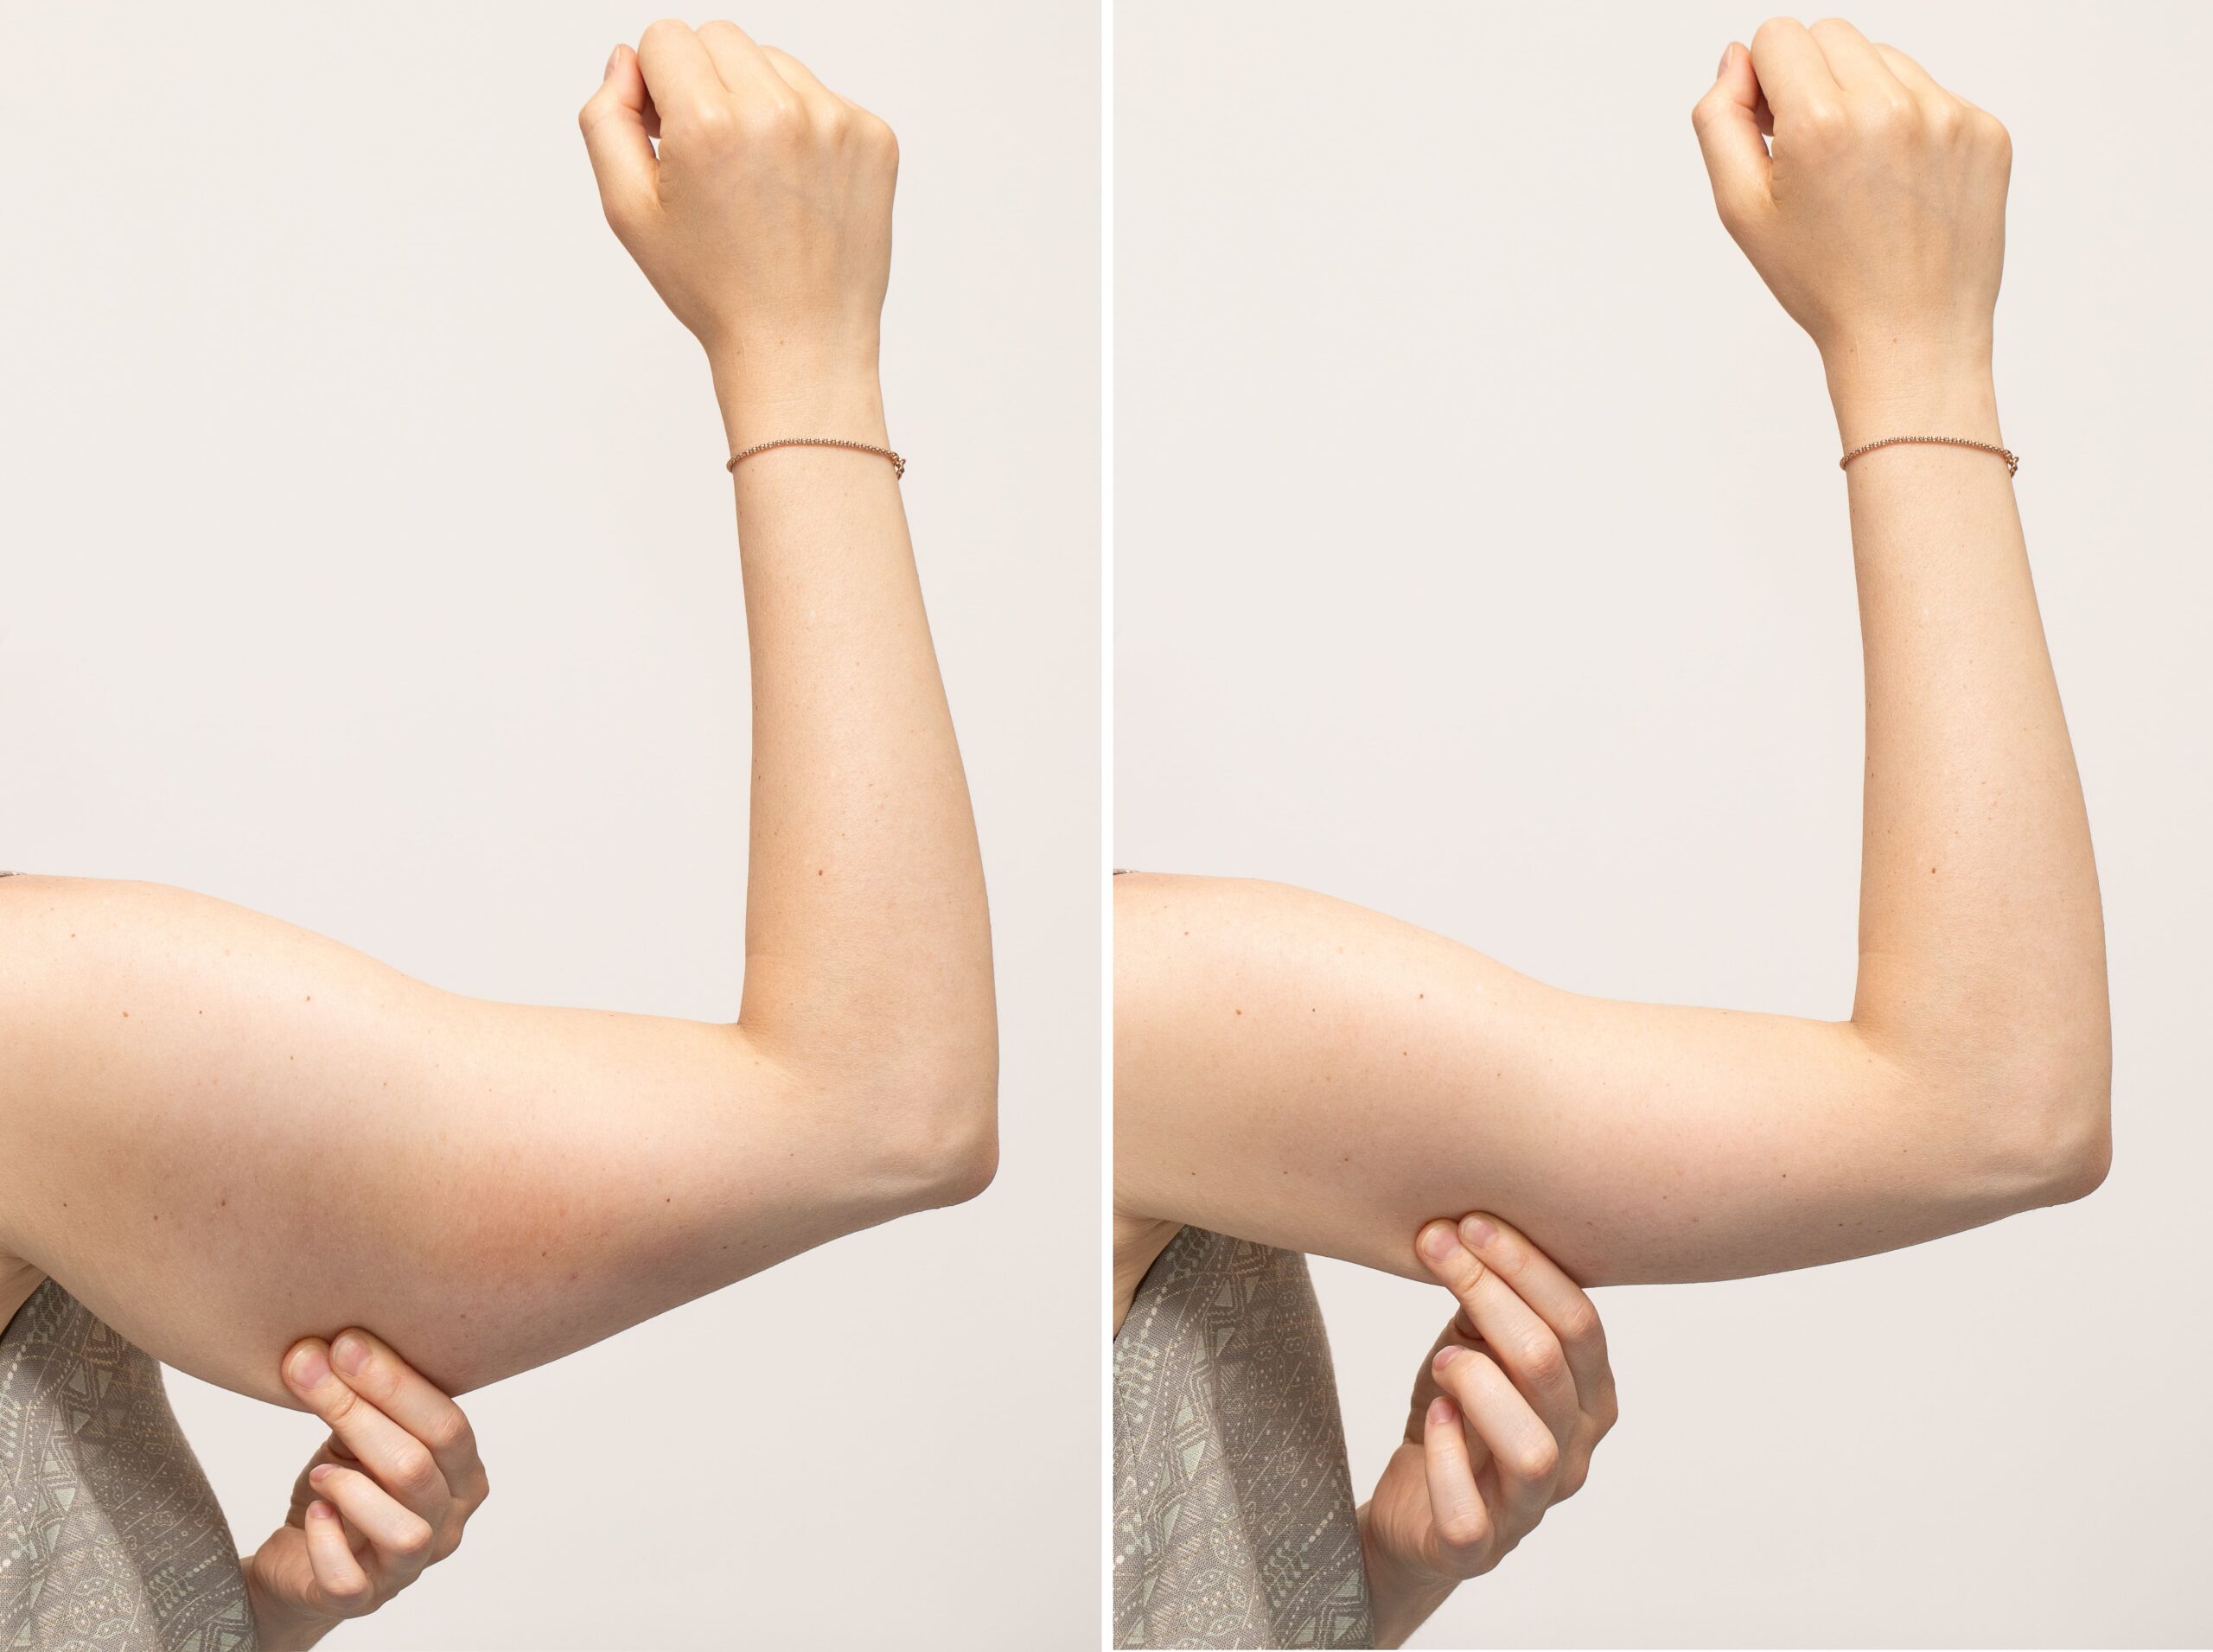 下圖為手臂抽脂前後對比，可在右圖看到手臂抽脂後，蝴蝶袖的部份明顯減少，手臂纖細不少。